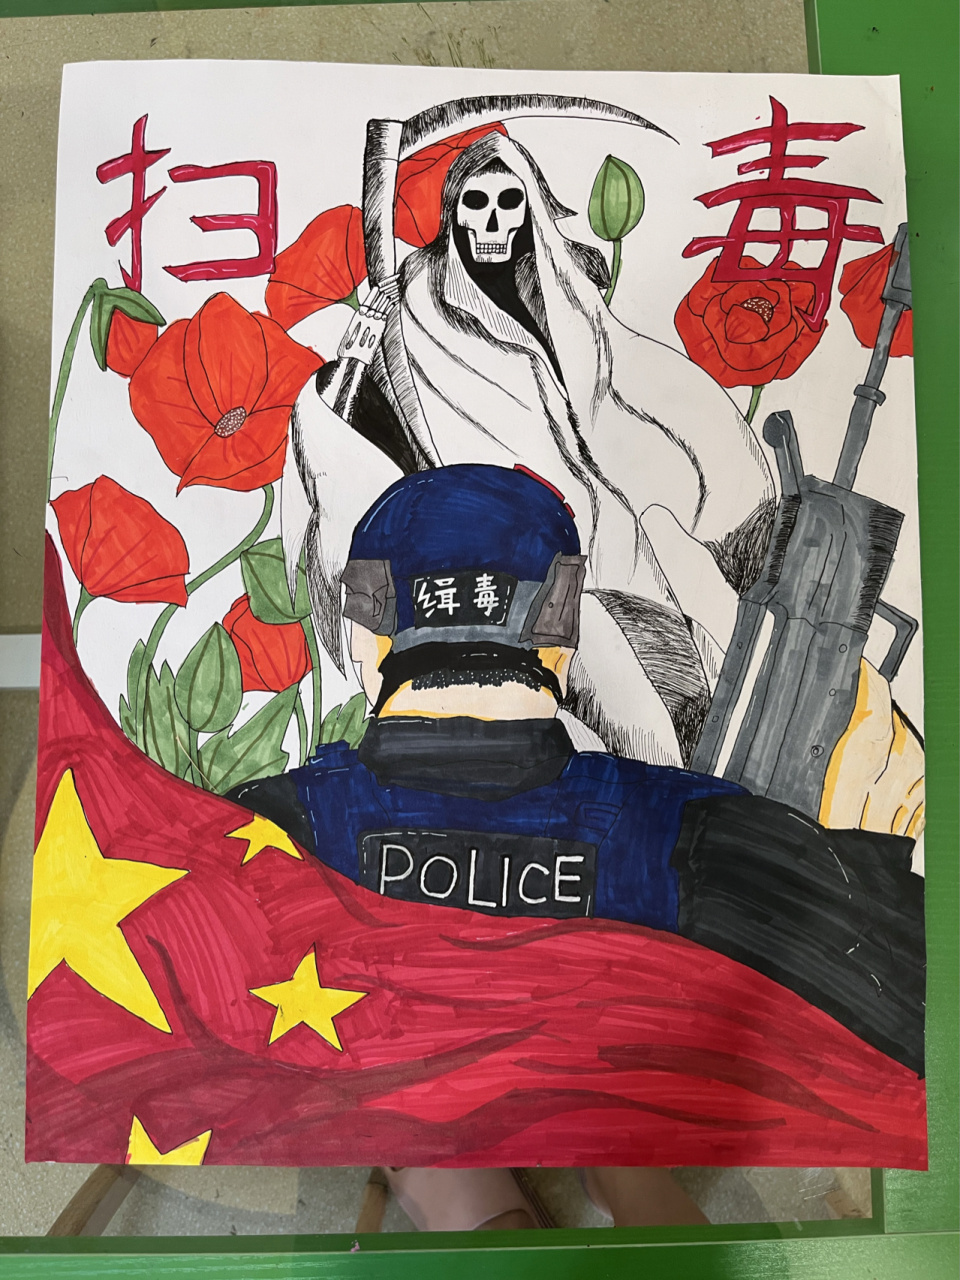 三年级禁毒绘画作品 6月26日是国际禁毒日